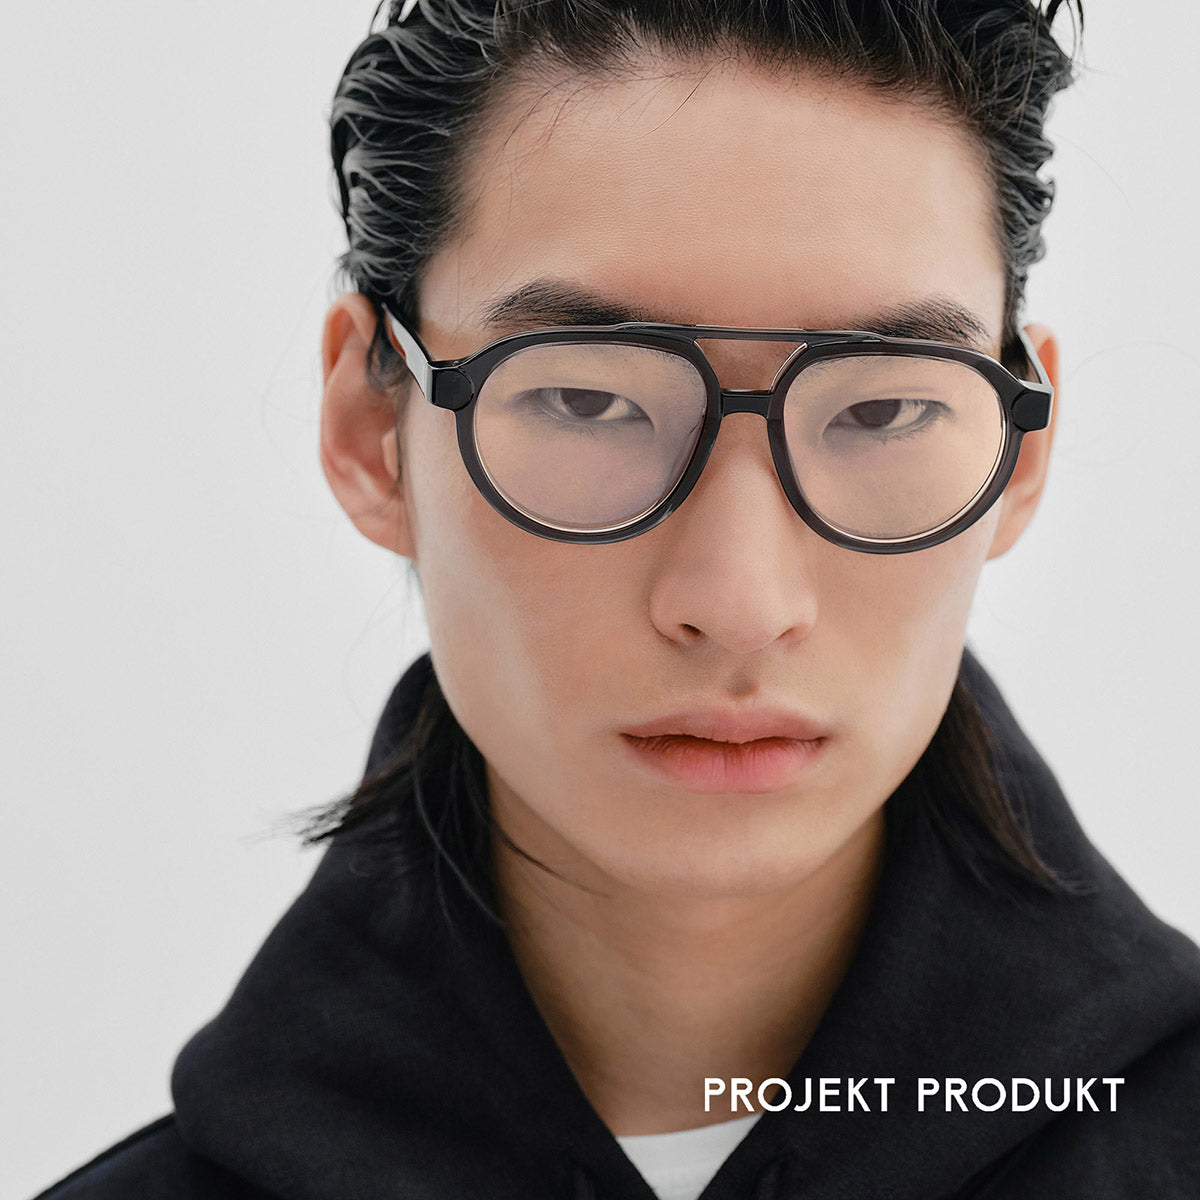 Projekt Produkt - AU21 C01【Pre-order Now】